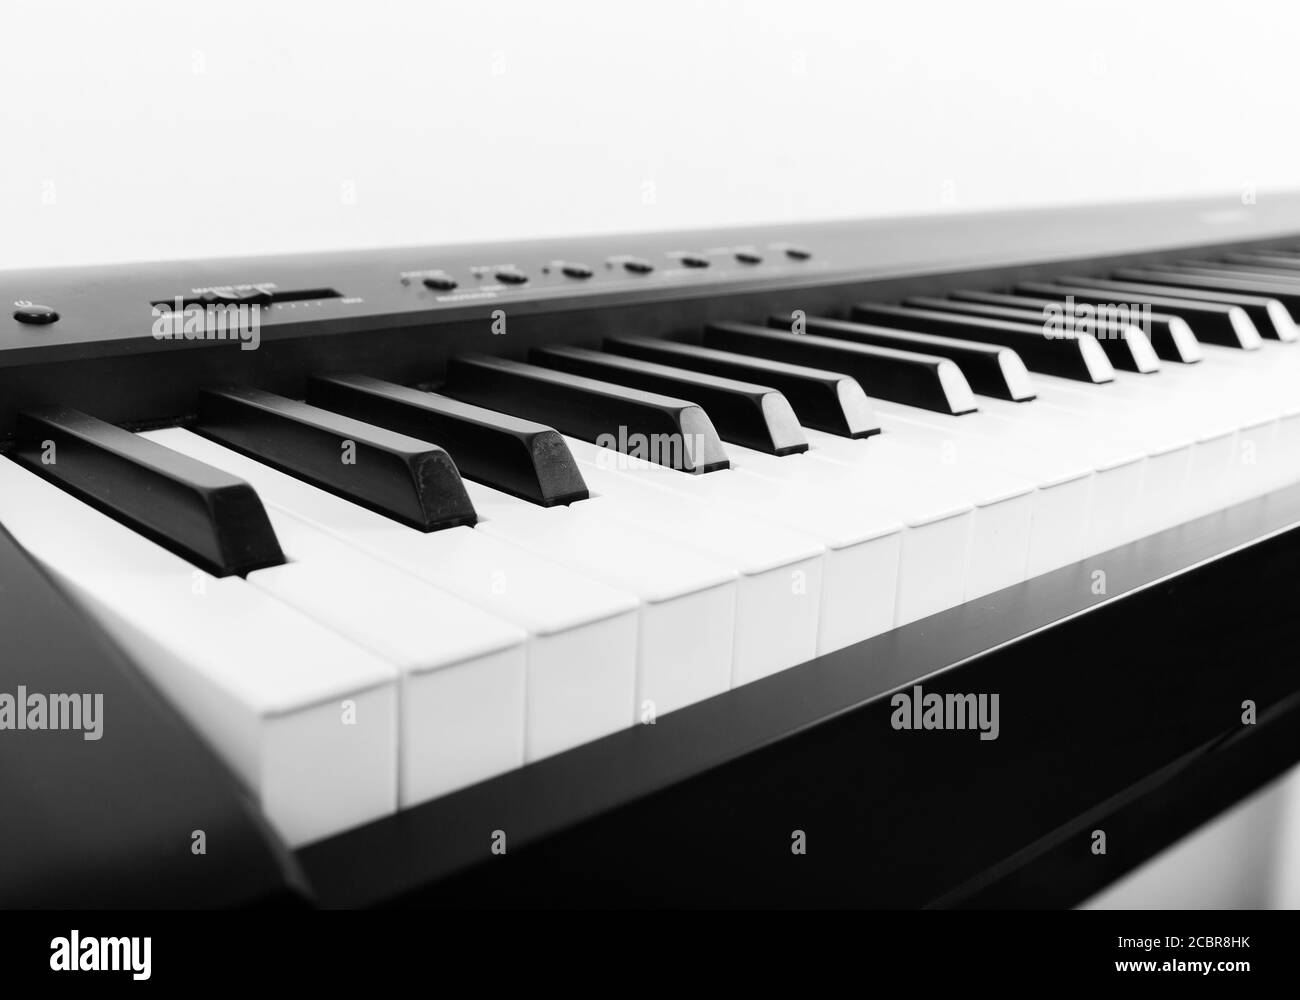 Moderno pianoforte digitale in bianco e nero Foto Stock